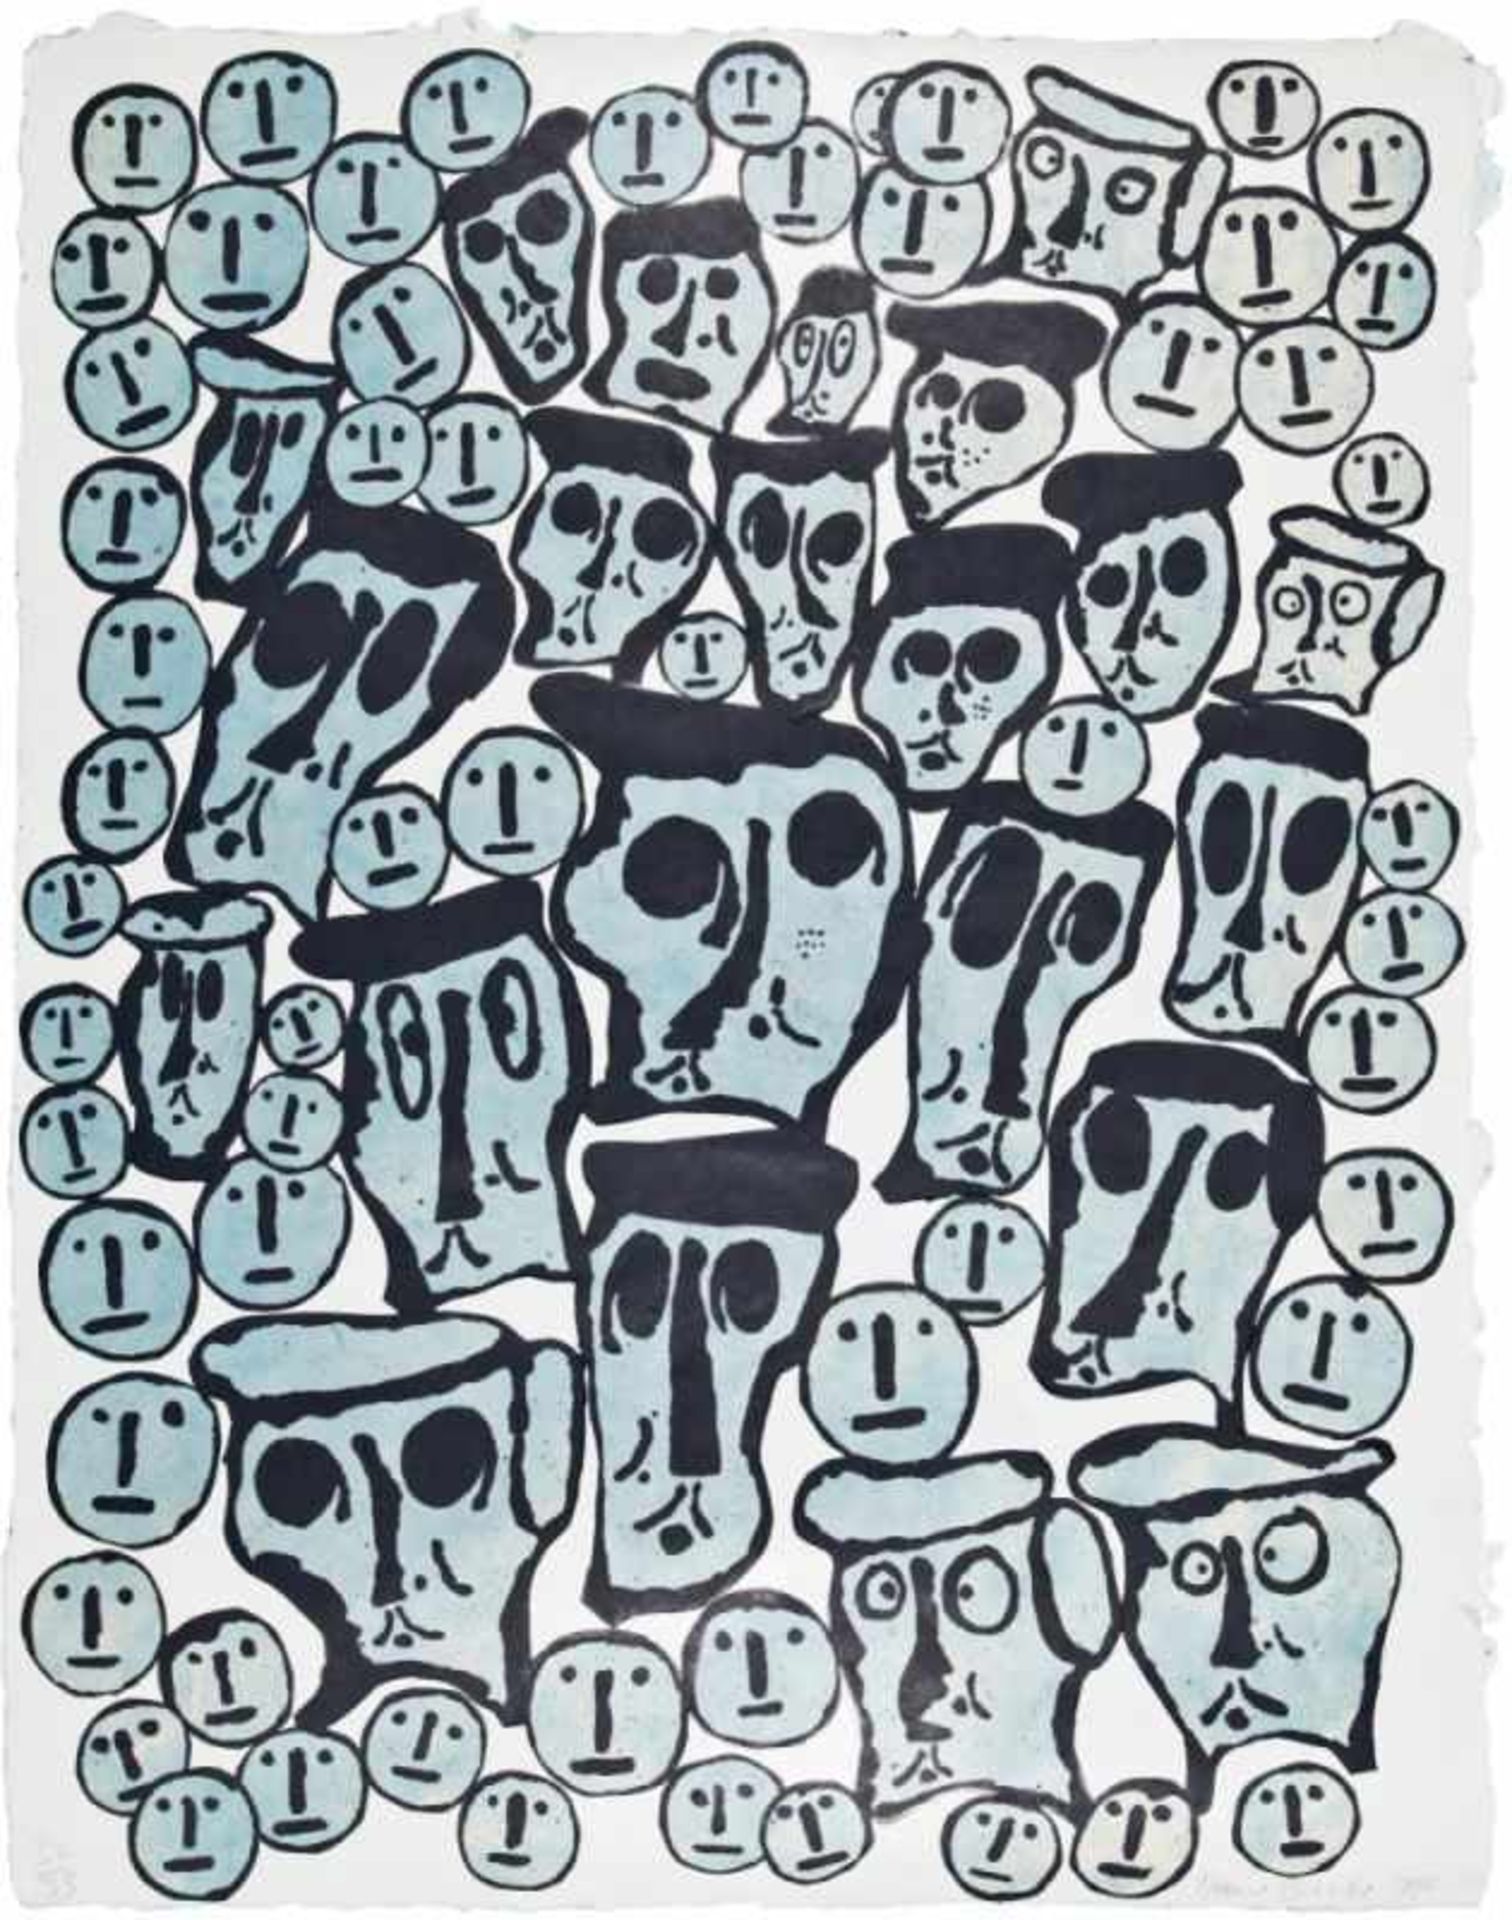 DONALD BAECHLER(1956 HARTFORD, USA)CROWDS, 1990Originalsiebdruck auf Bütten, 111 x 86